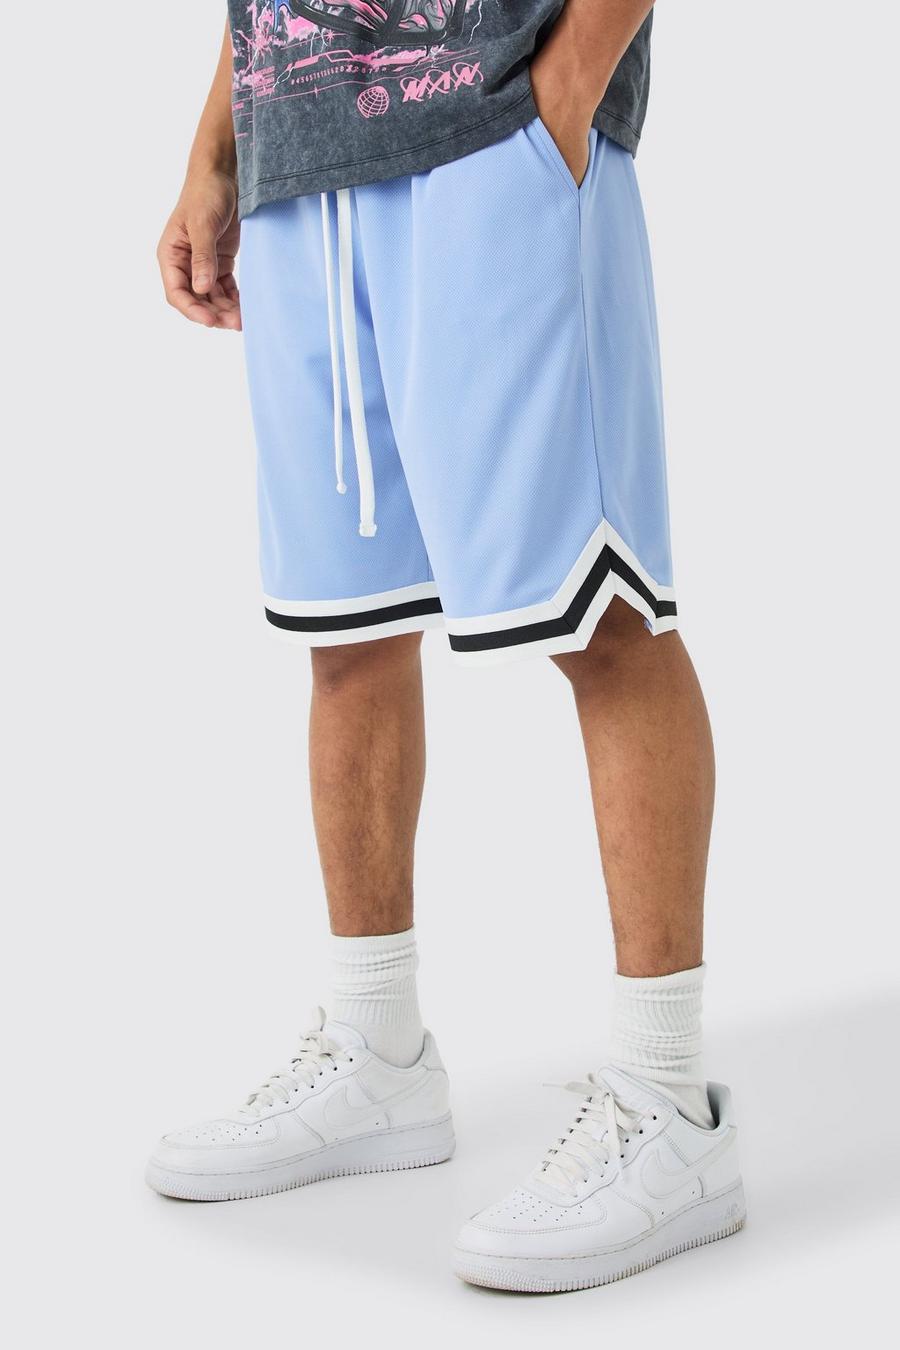 Pantalón corto holgado de malla estilo baloncesto, Blue